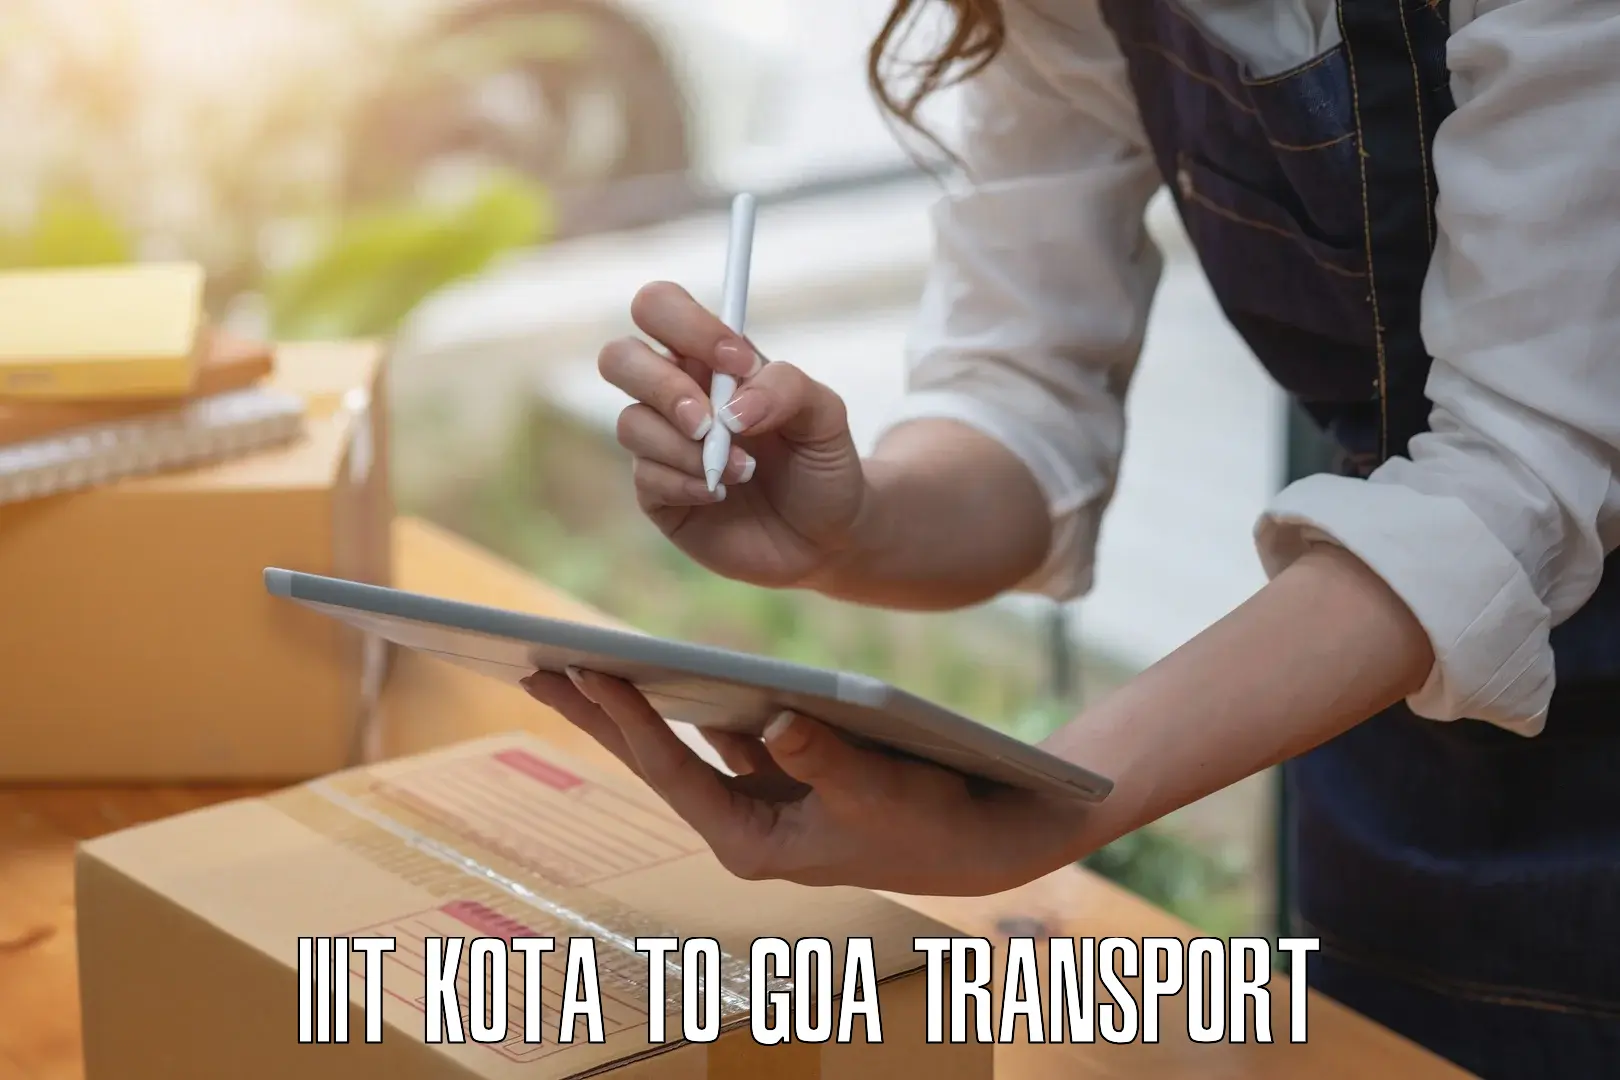 Nearby transport service IIIT Kota to Goa